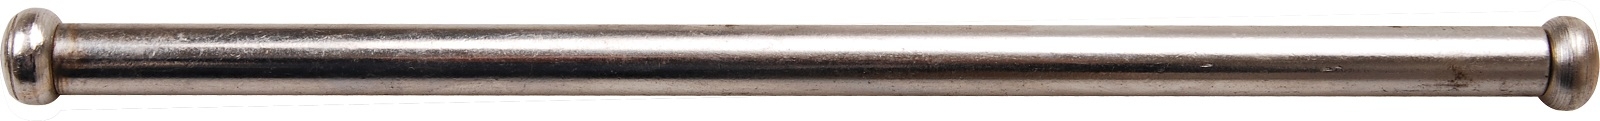 Stahlknebel für Schraubstöcke | 8 x 200 mm - BGS 59001